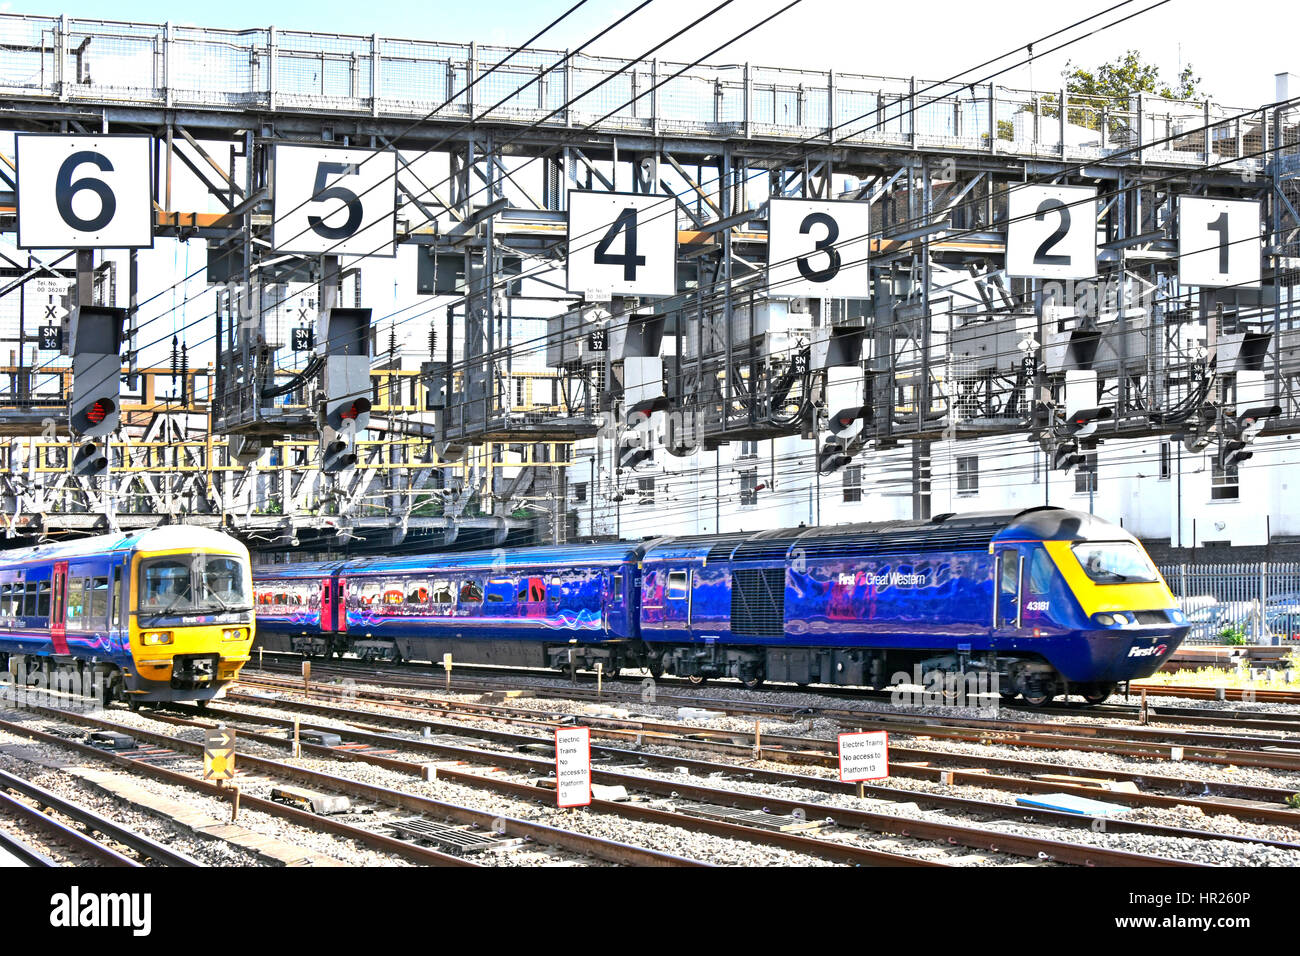 Zwei britischen Firstgroup First Great Western Zug verließ nur Paddington Bahnhof Station London UK Unterquerung große Signal Gantry übergroßen Zahlen Stockfoto